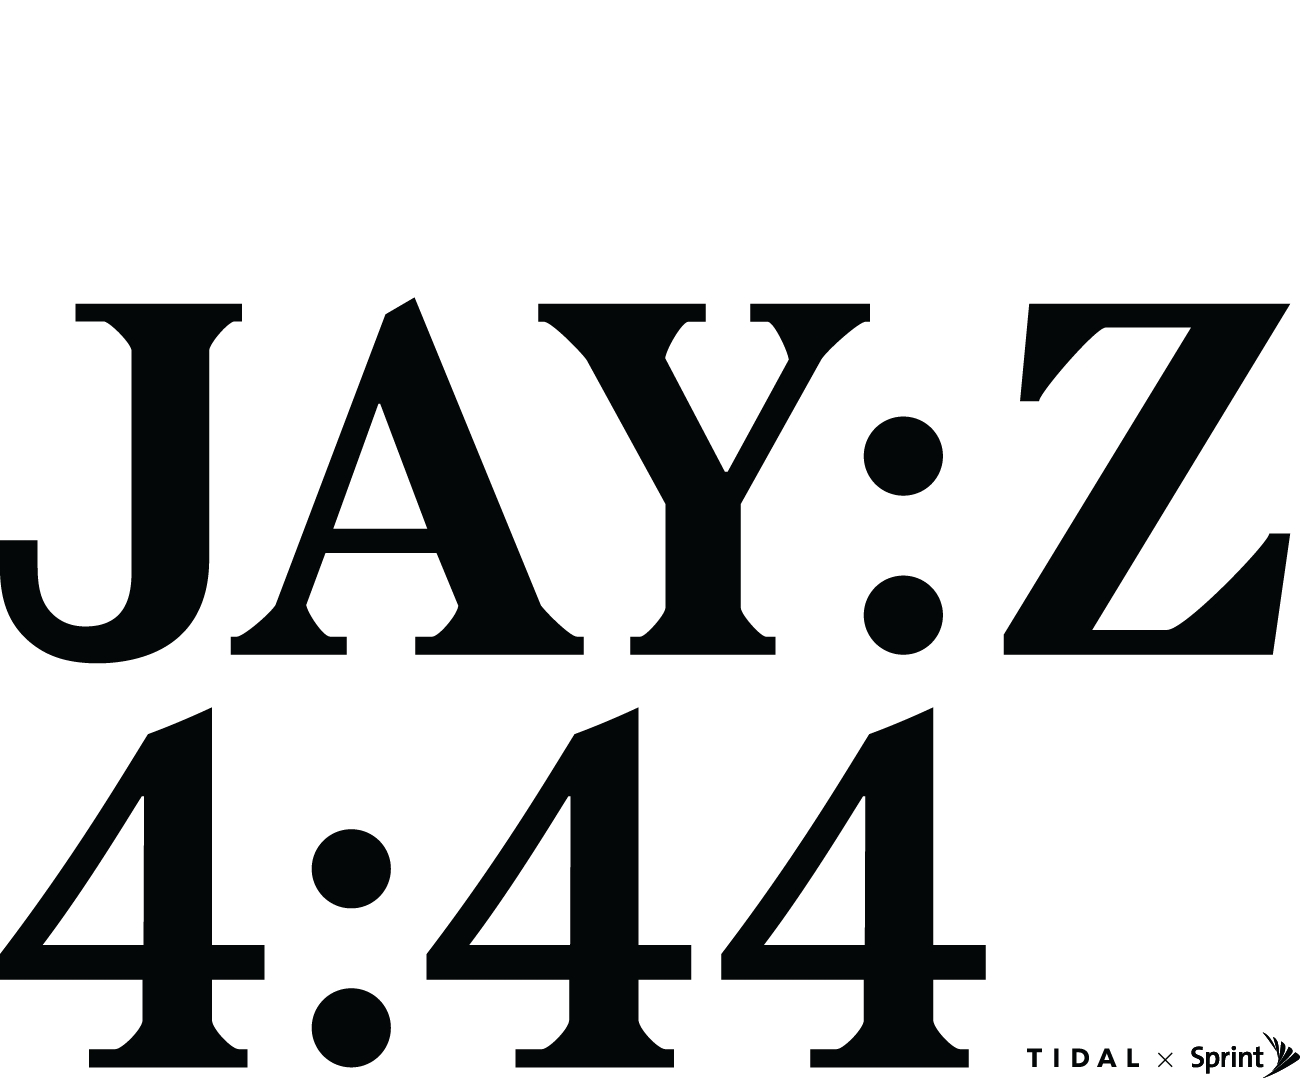 Jay-Z Logo - TIDAL